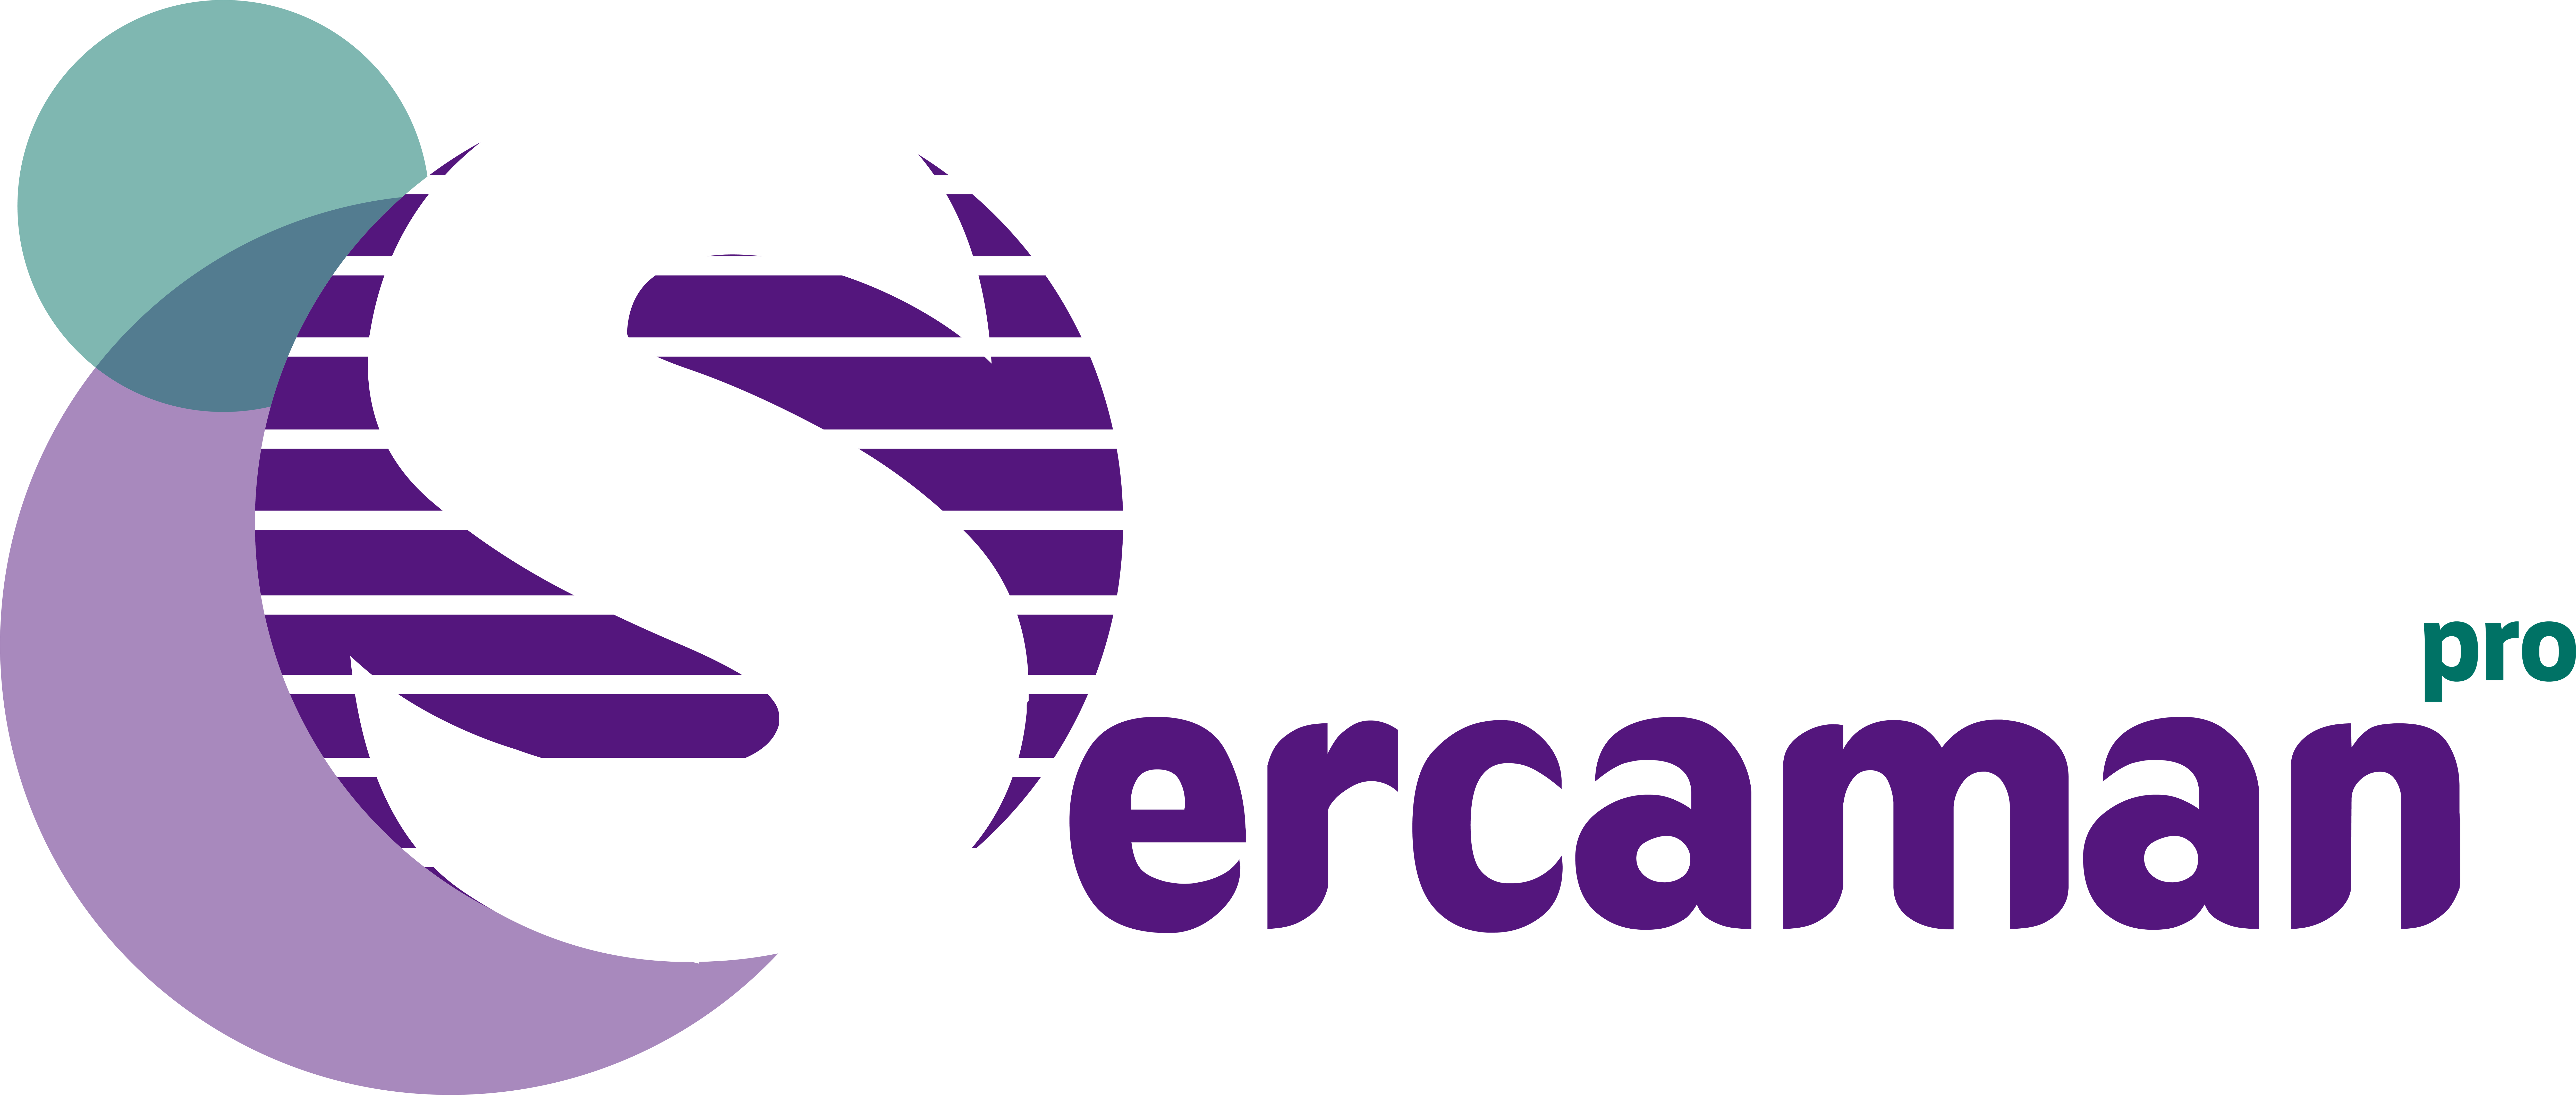 Logo Sercaman